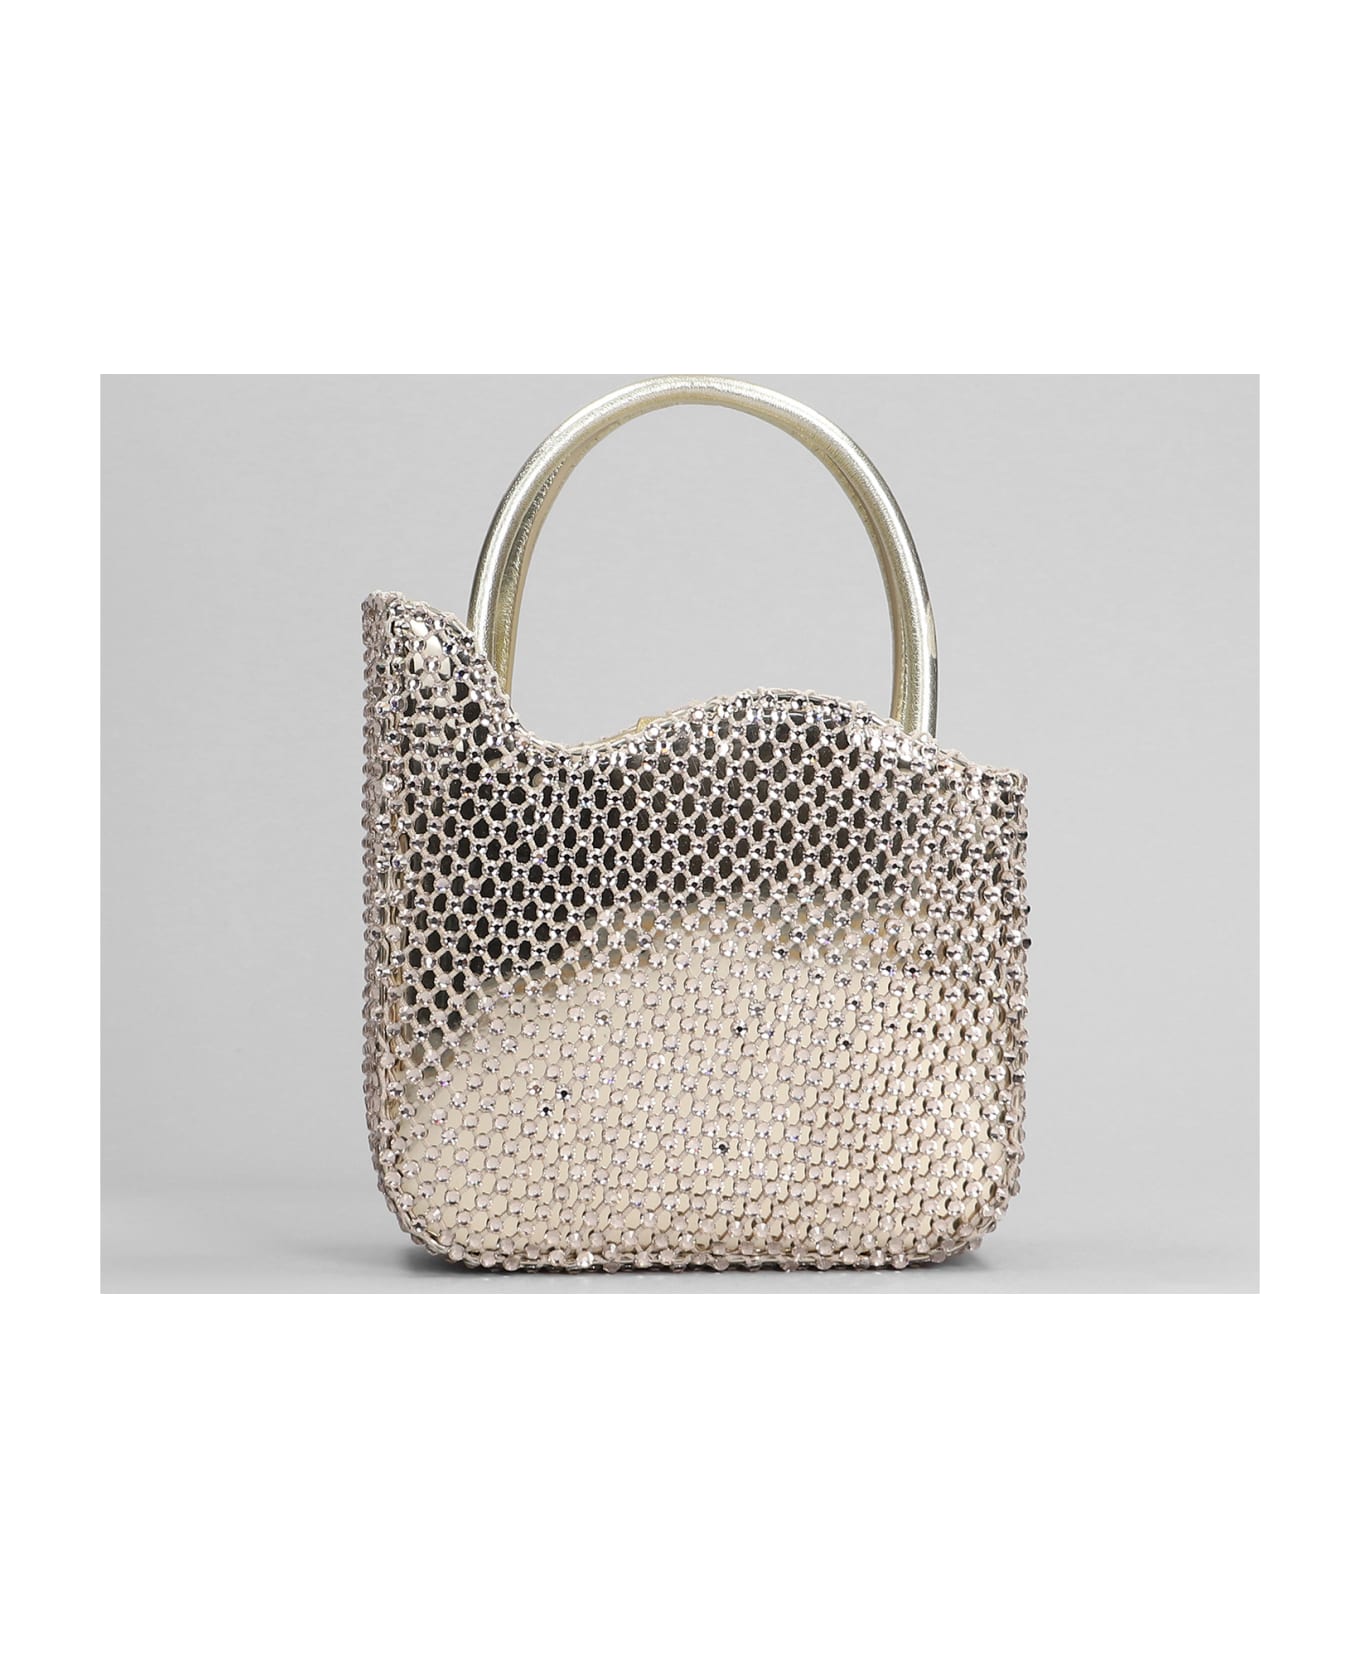 Le Silla Gilda Hand Bag In Platinum Leather - platinum